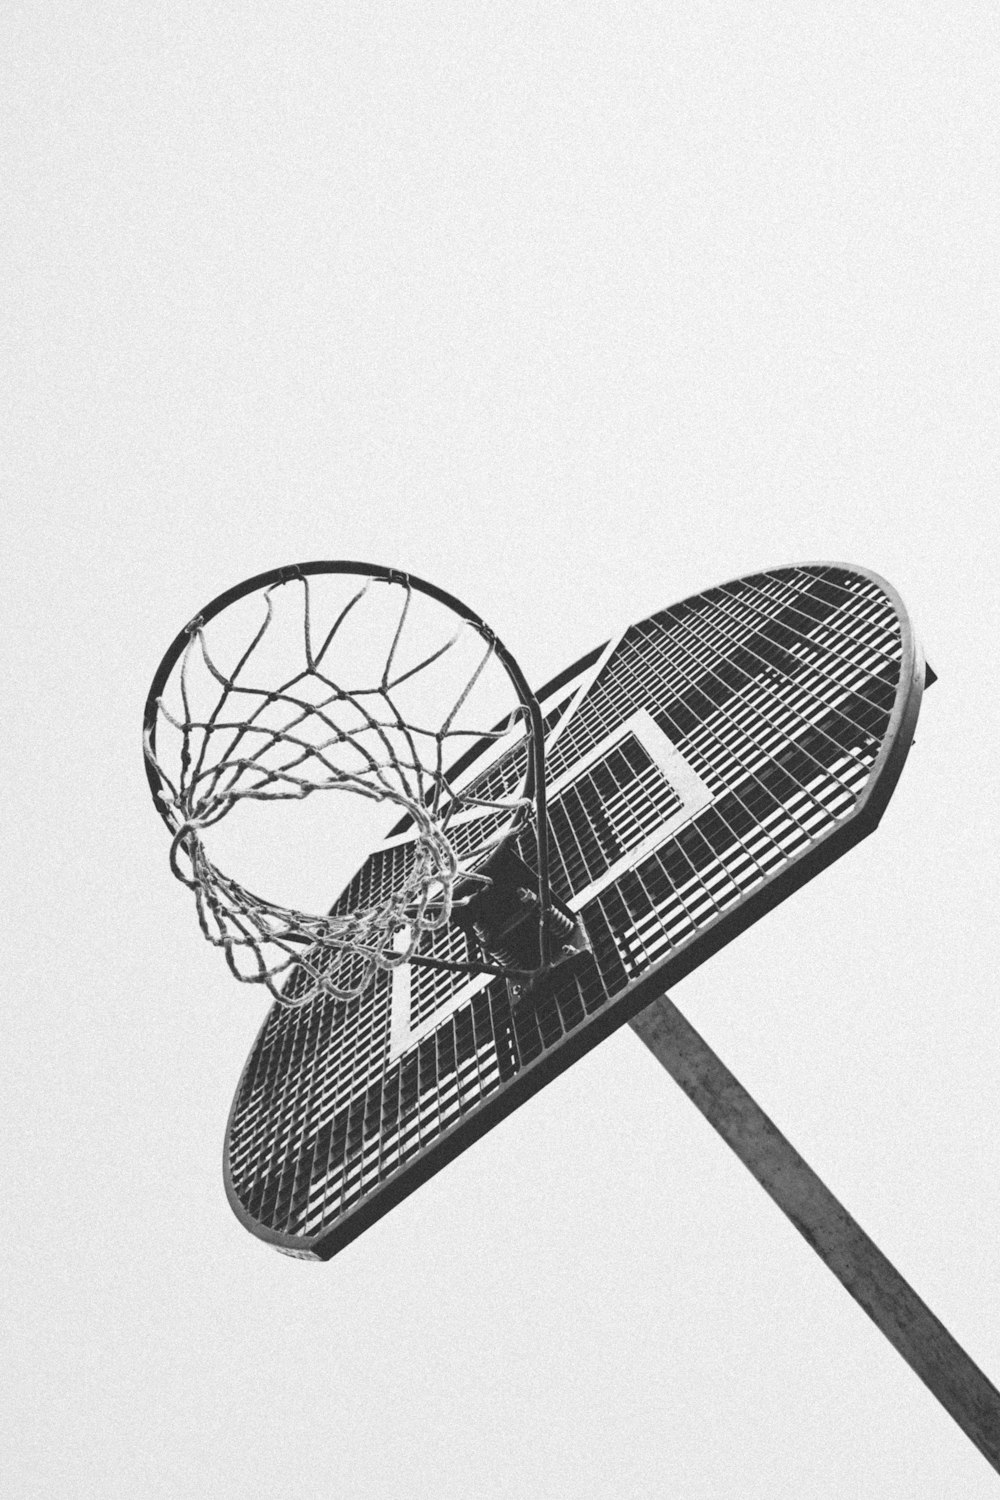 Une photo en noir et blanc d’un panier de basket-ball